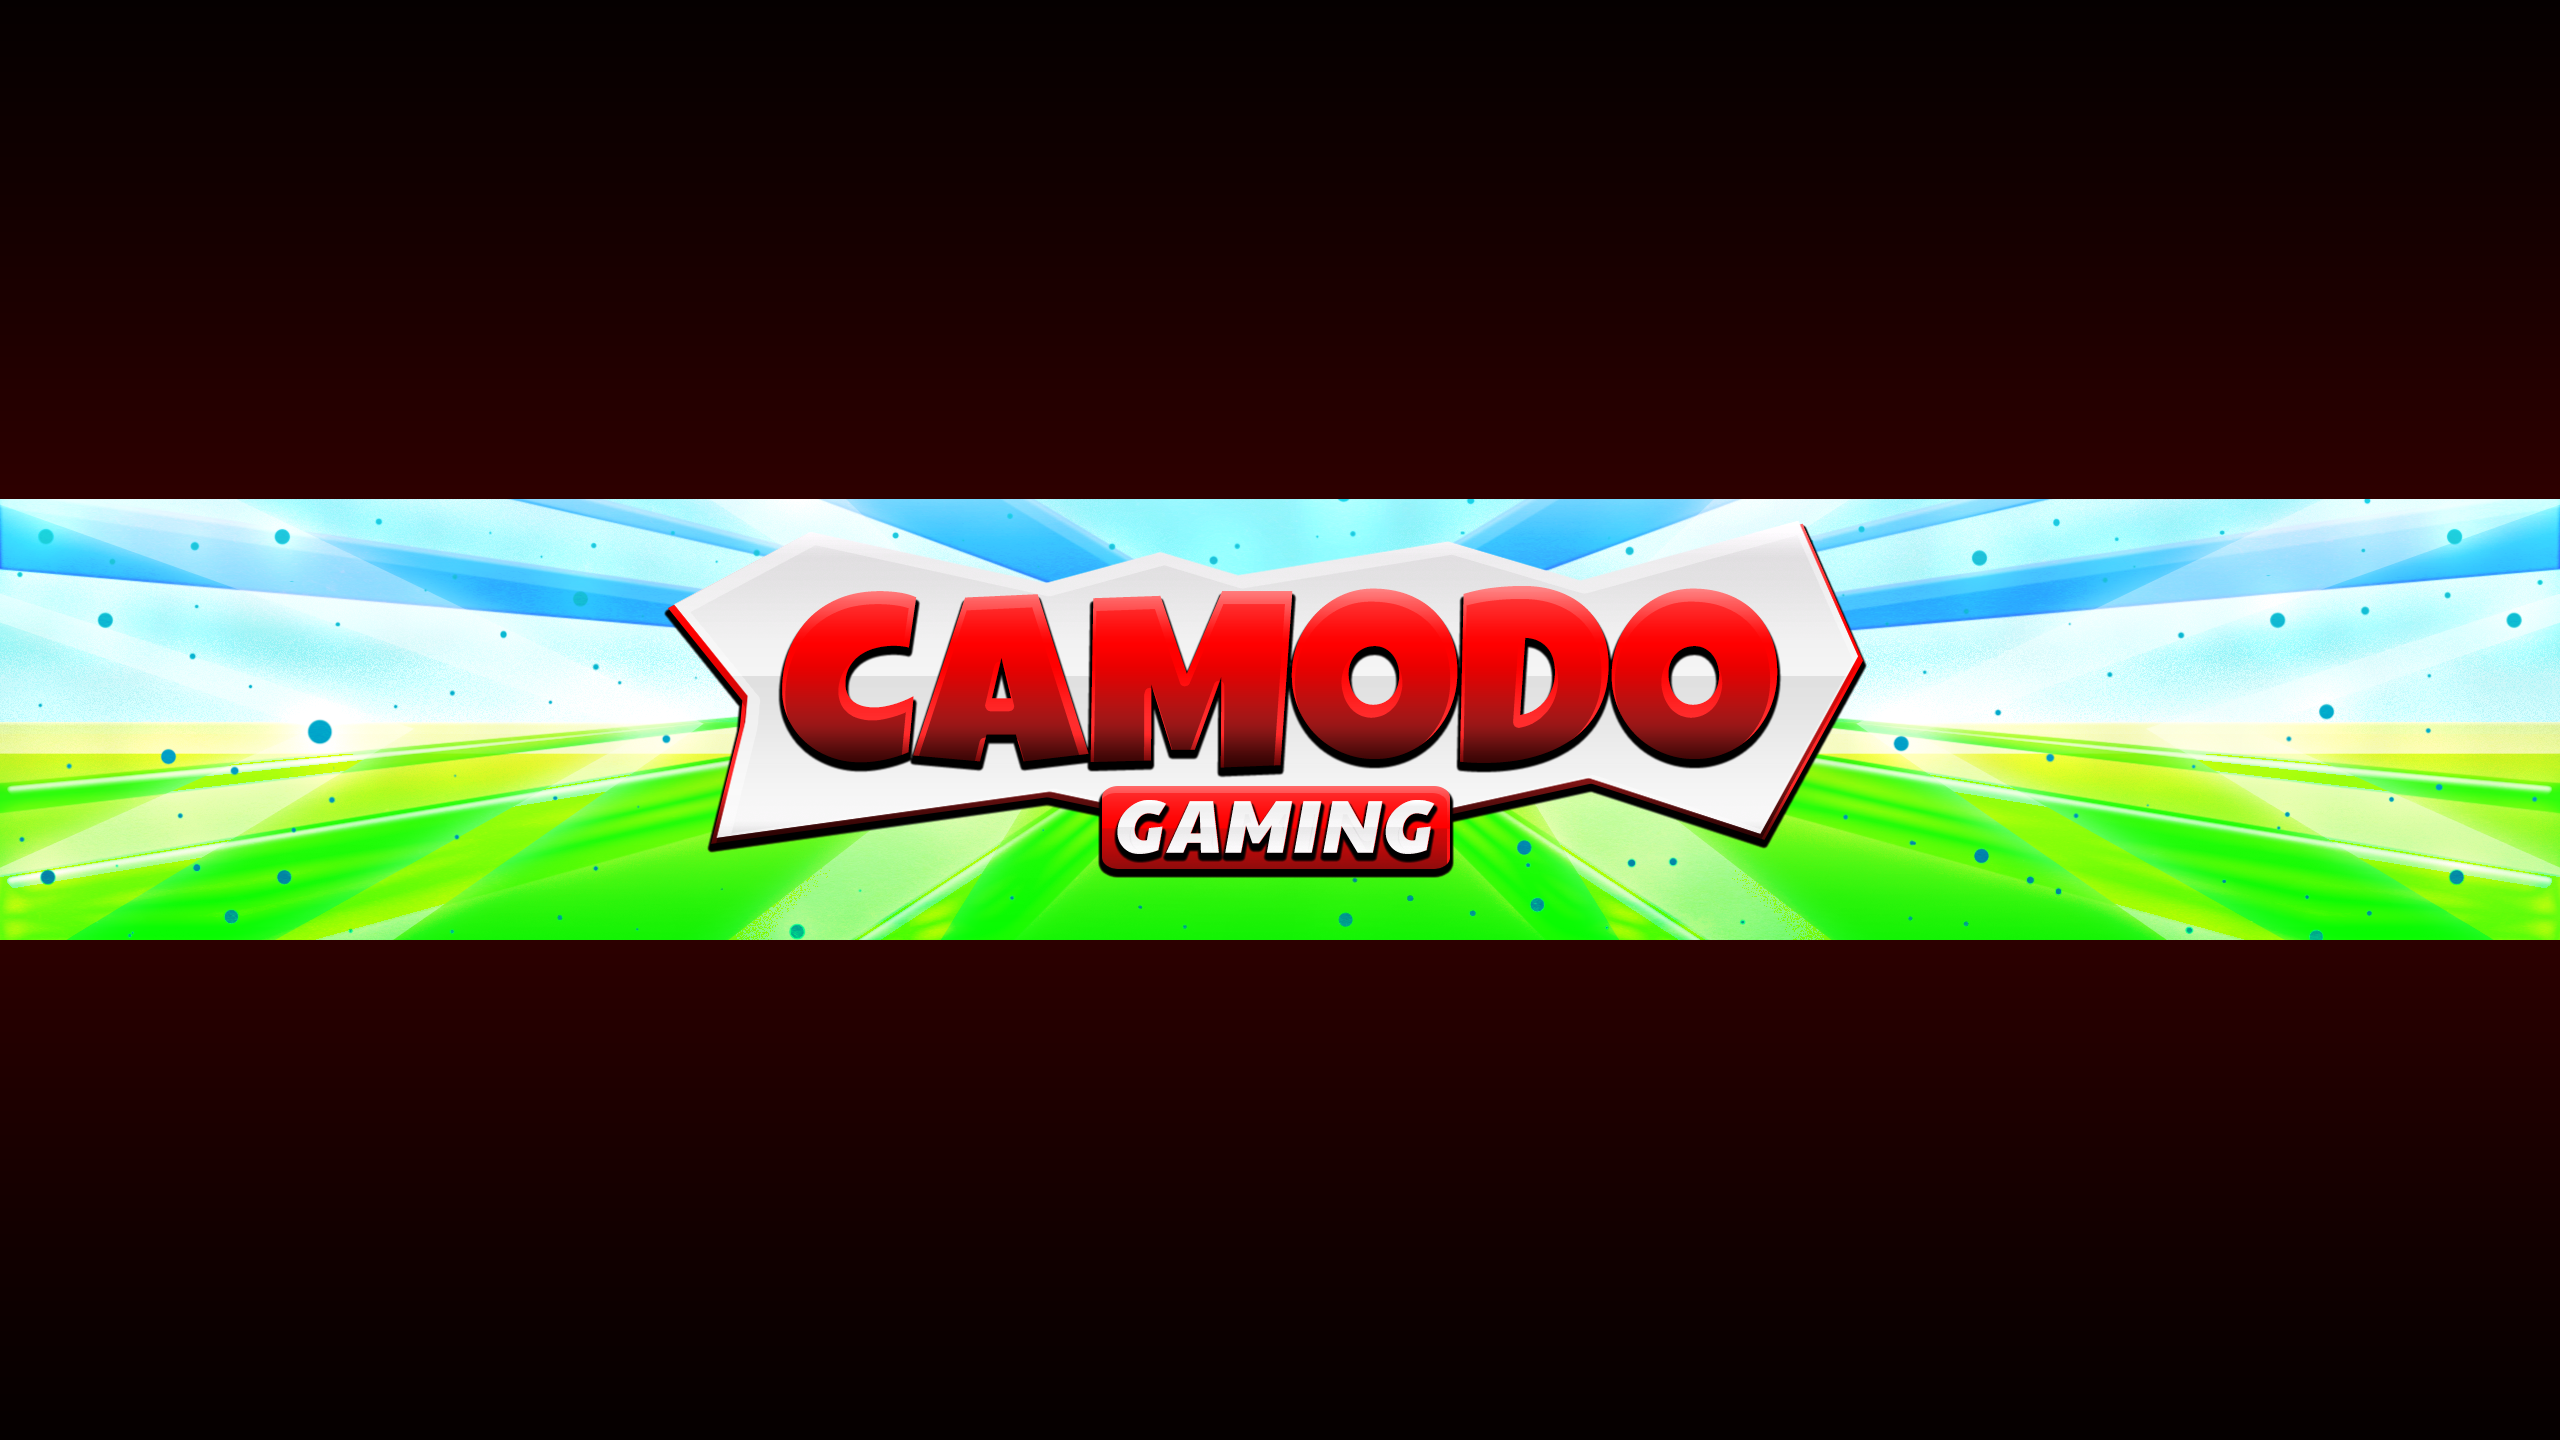 Camodo Gaming